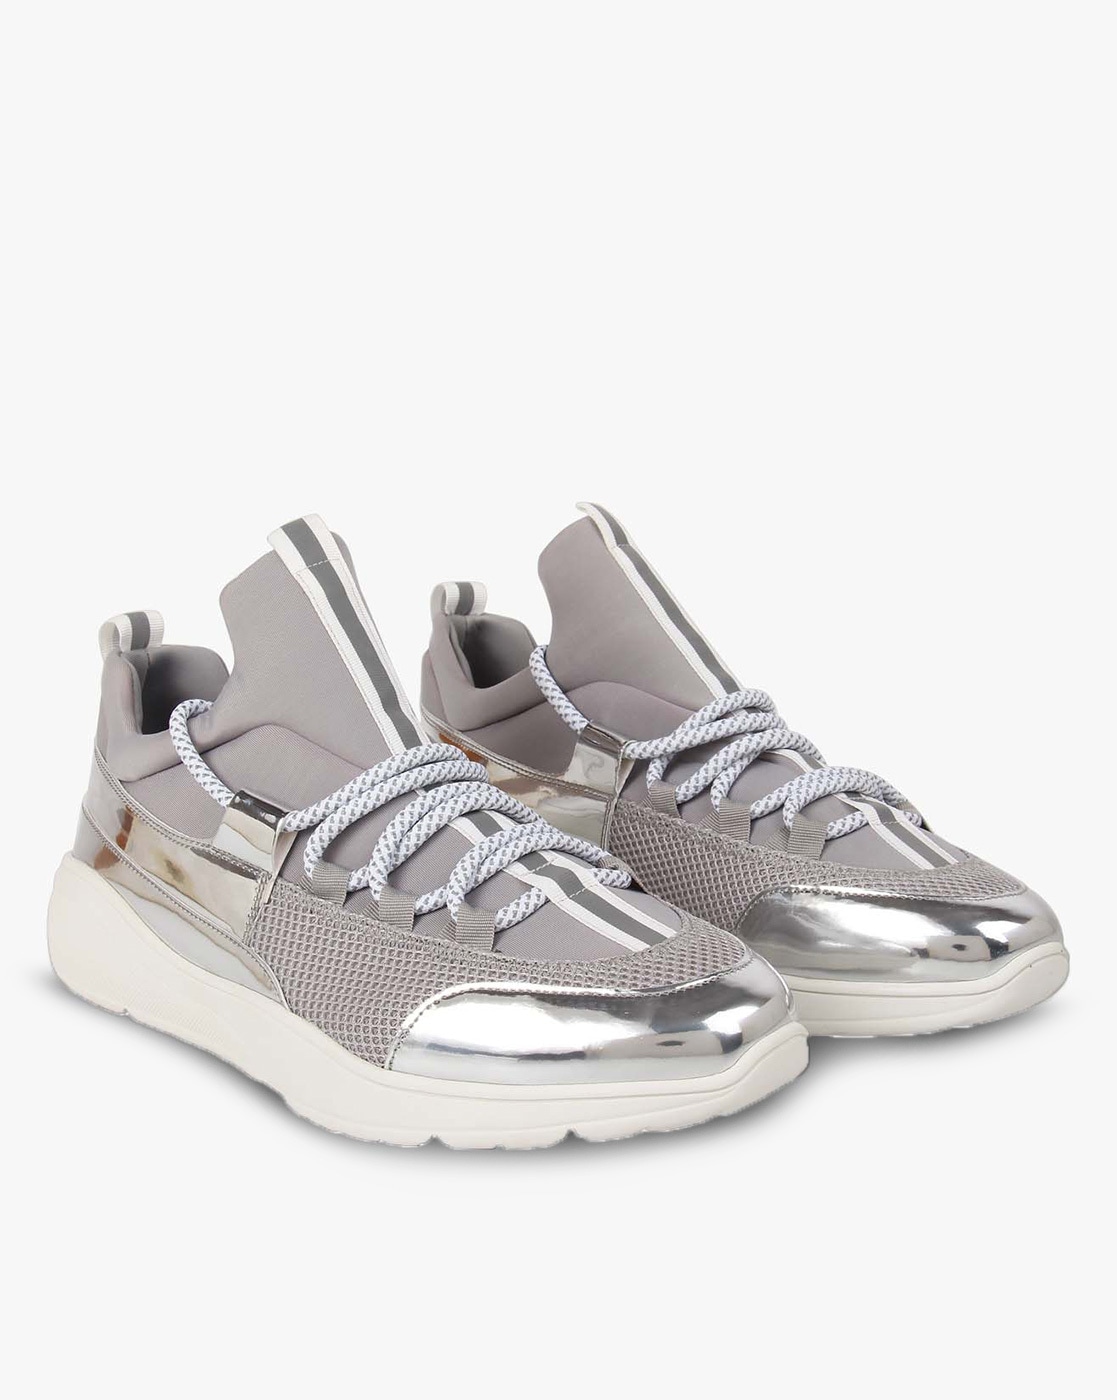 steve madden sneakers gray